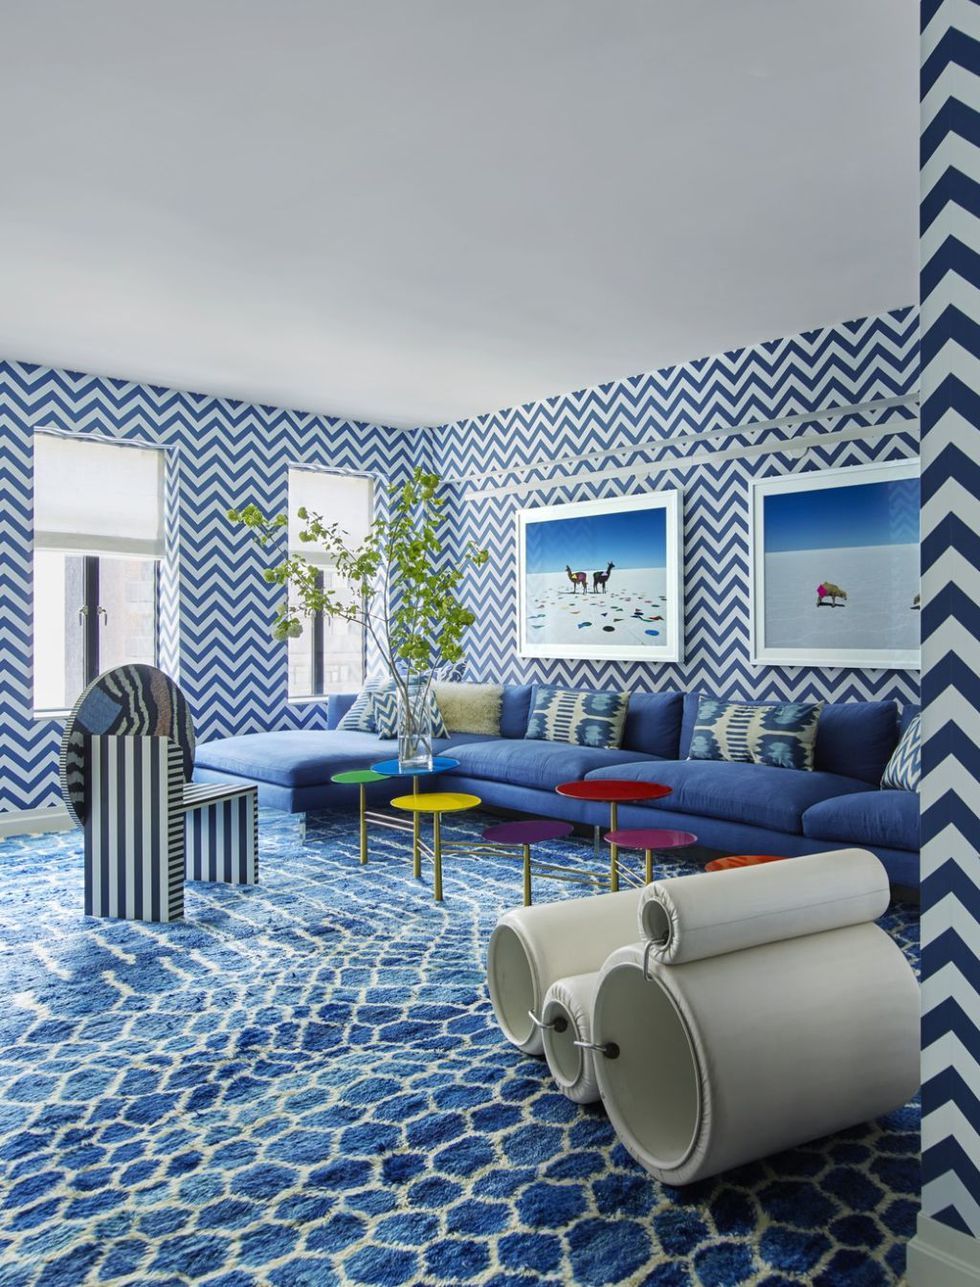 Modern Wallpaper Designs From 5 Top Designers  Wallsauce EU